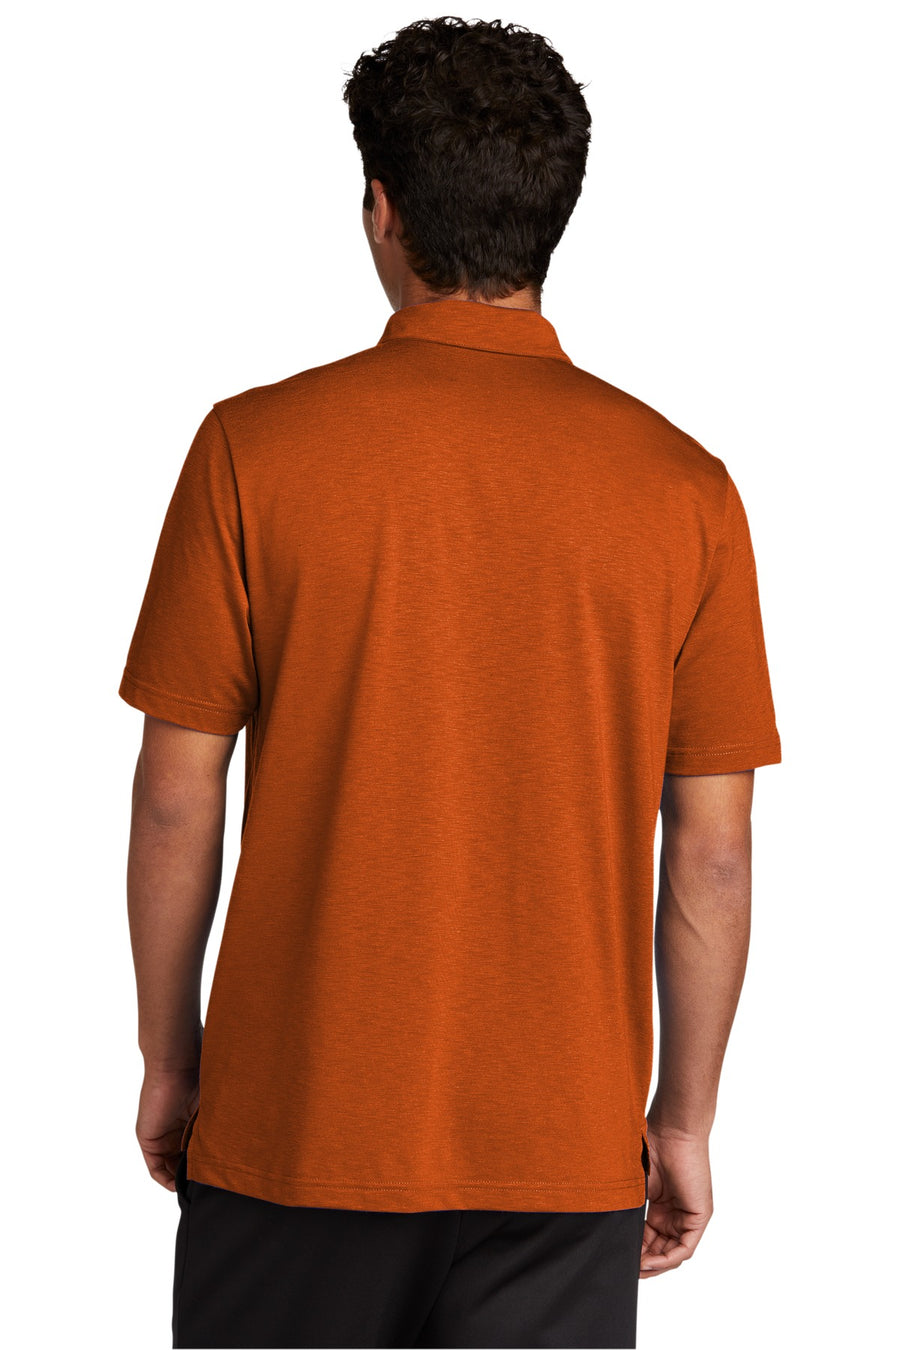 ST530-Texas Orange-back_model